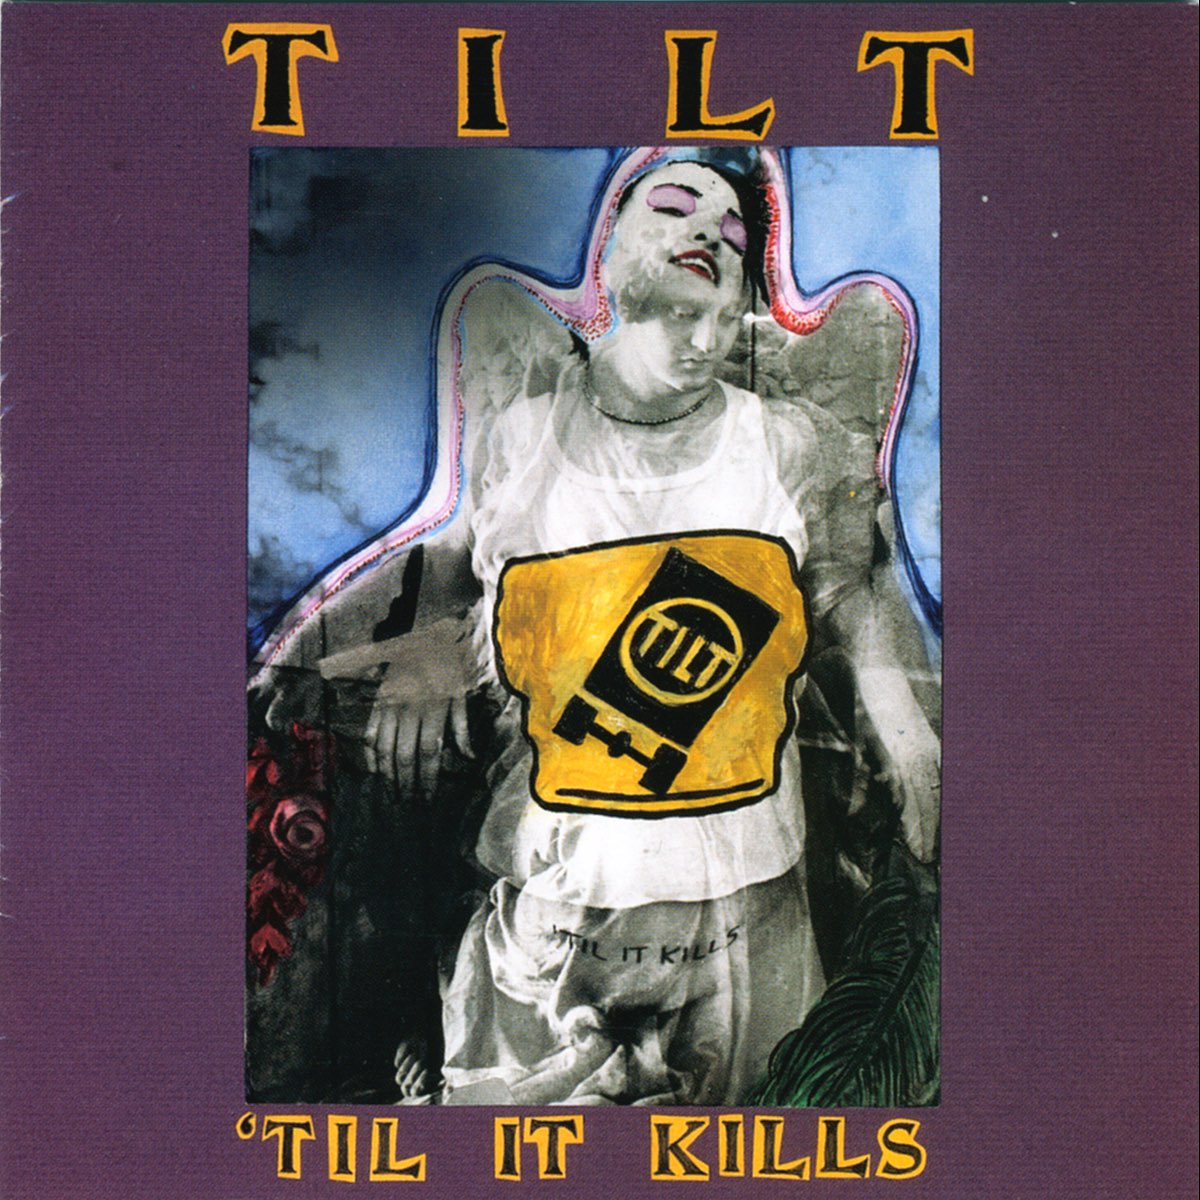 ‎'Til It Kills - Album by Tilt - Apple Music